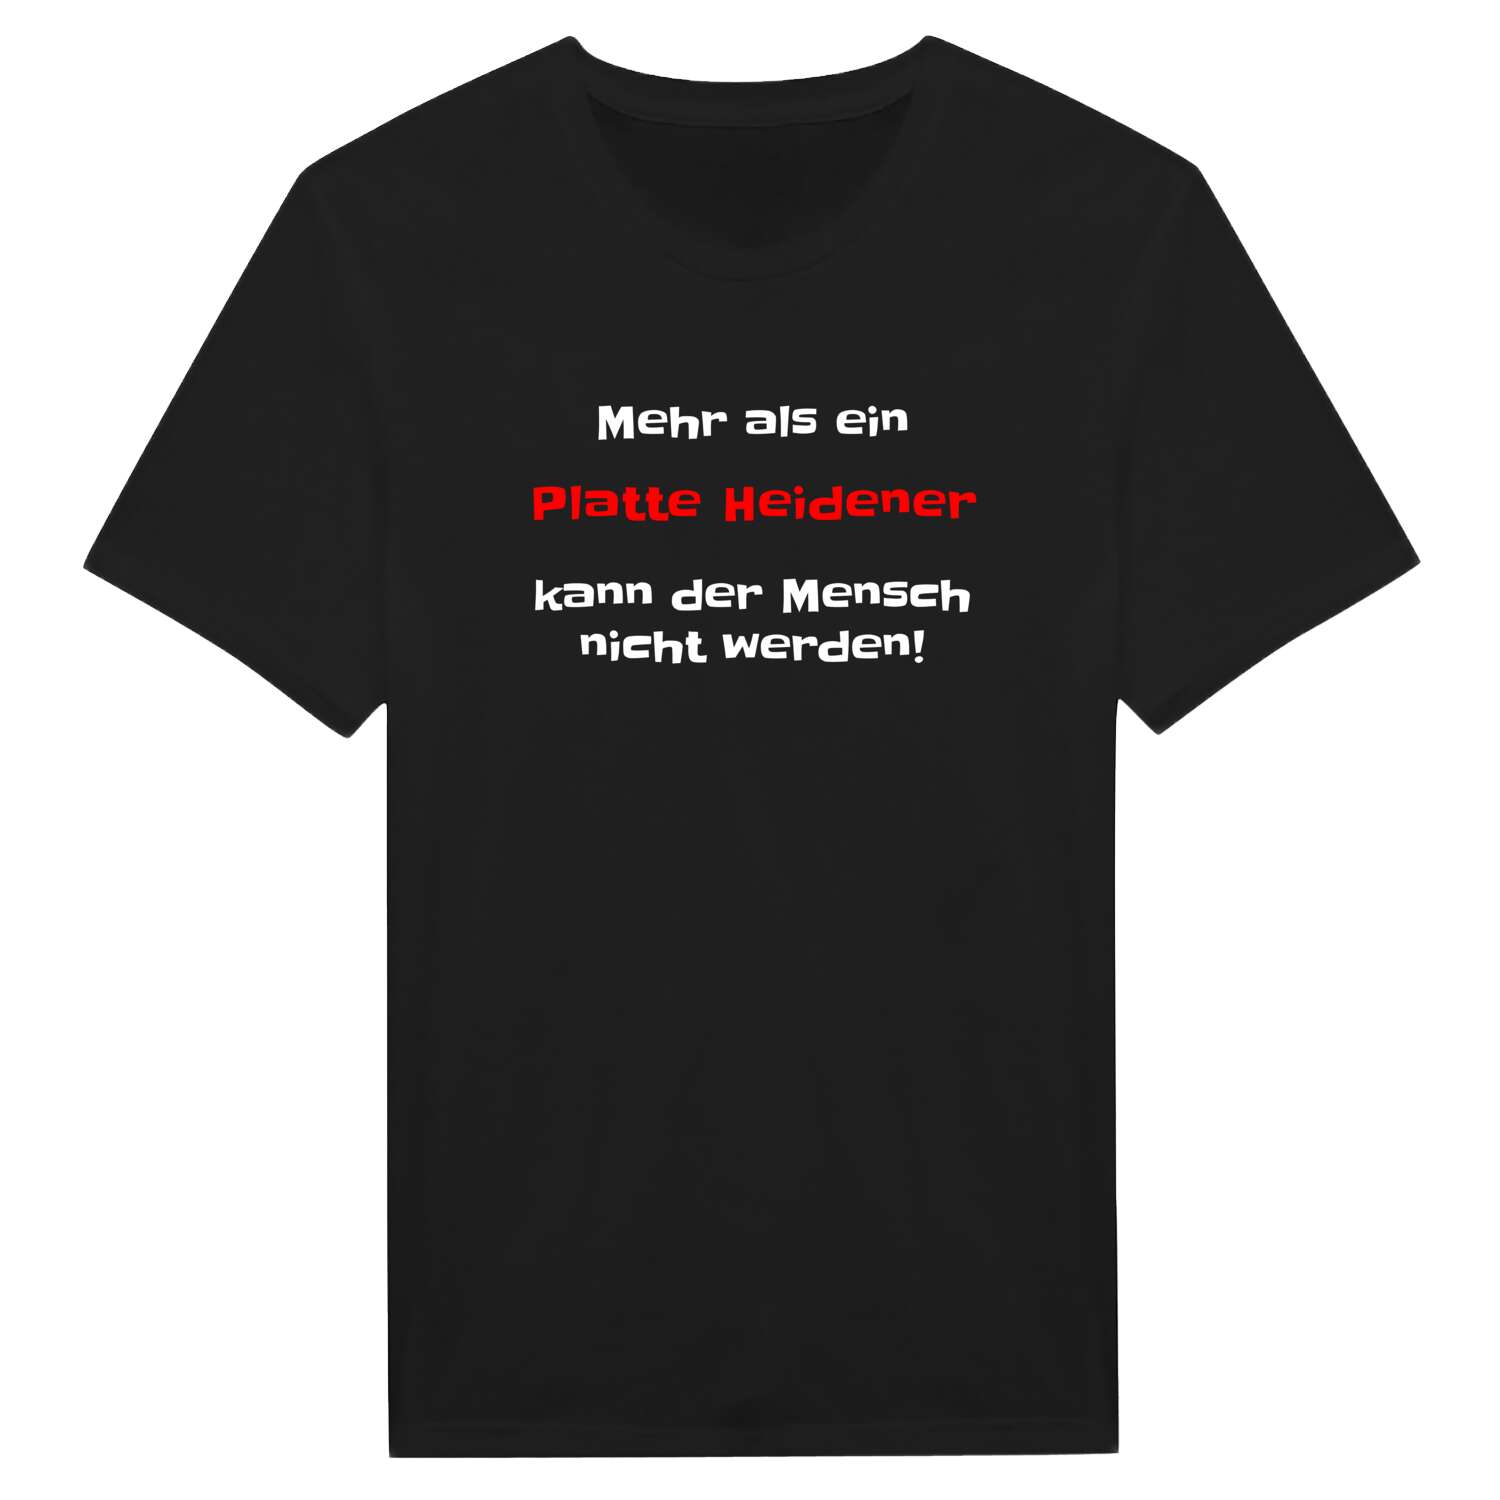 Platte Heide T-Shirt »Mehr als ein«